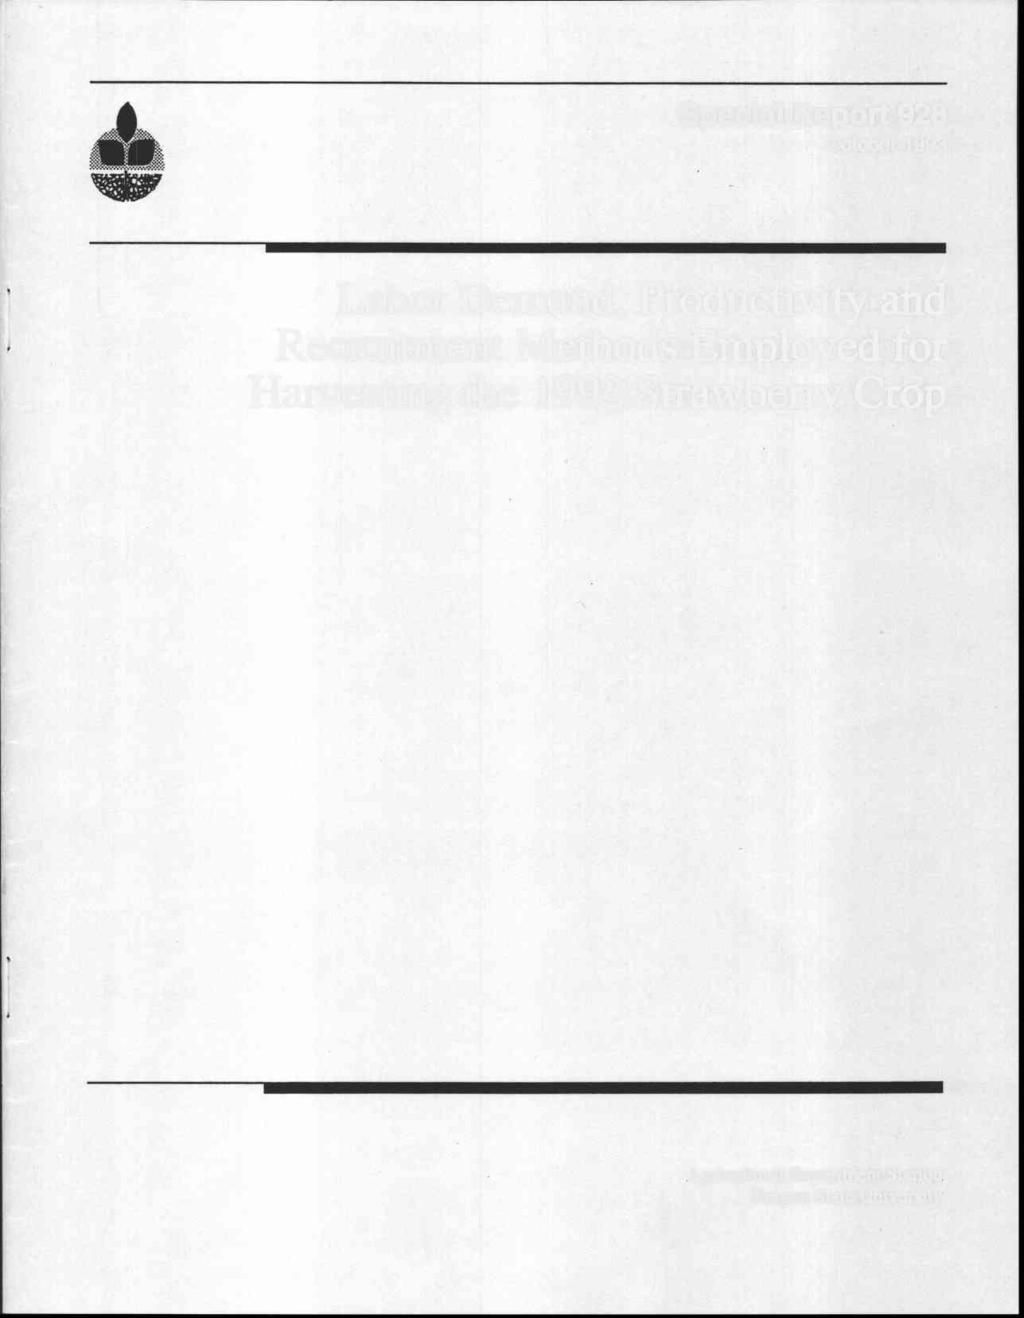 Special Report 928 October 1993 Labor Demand,